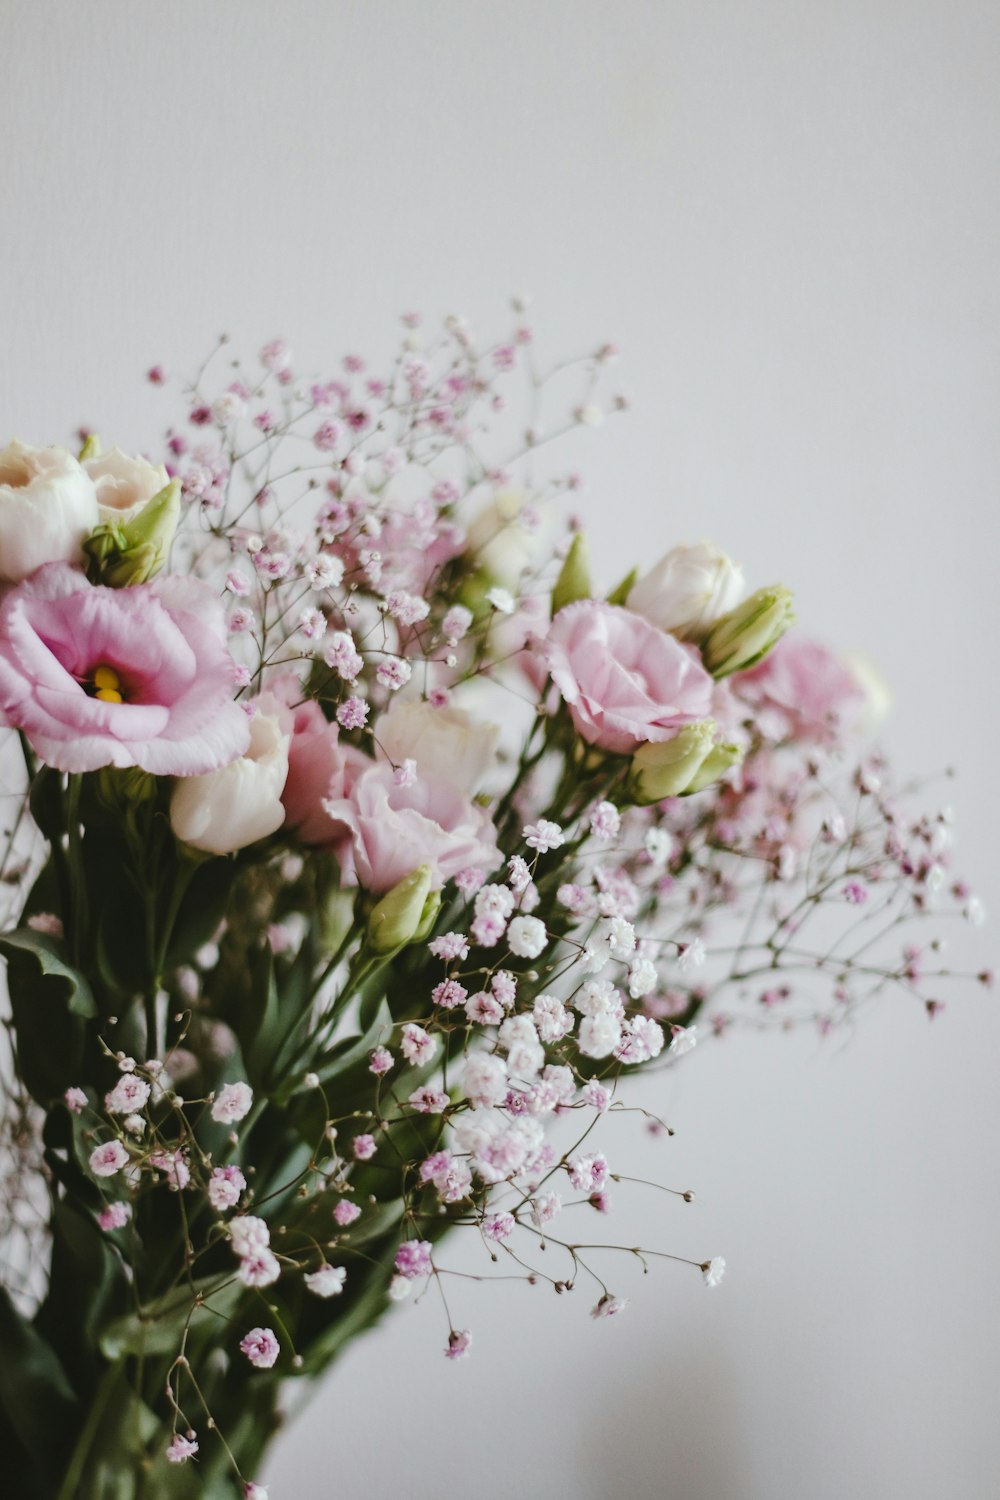 흰색 테이블에 분홍색과 흰색 꽃